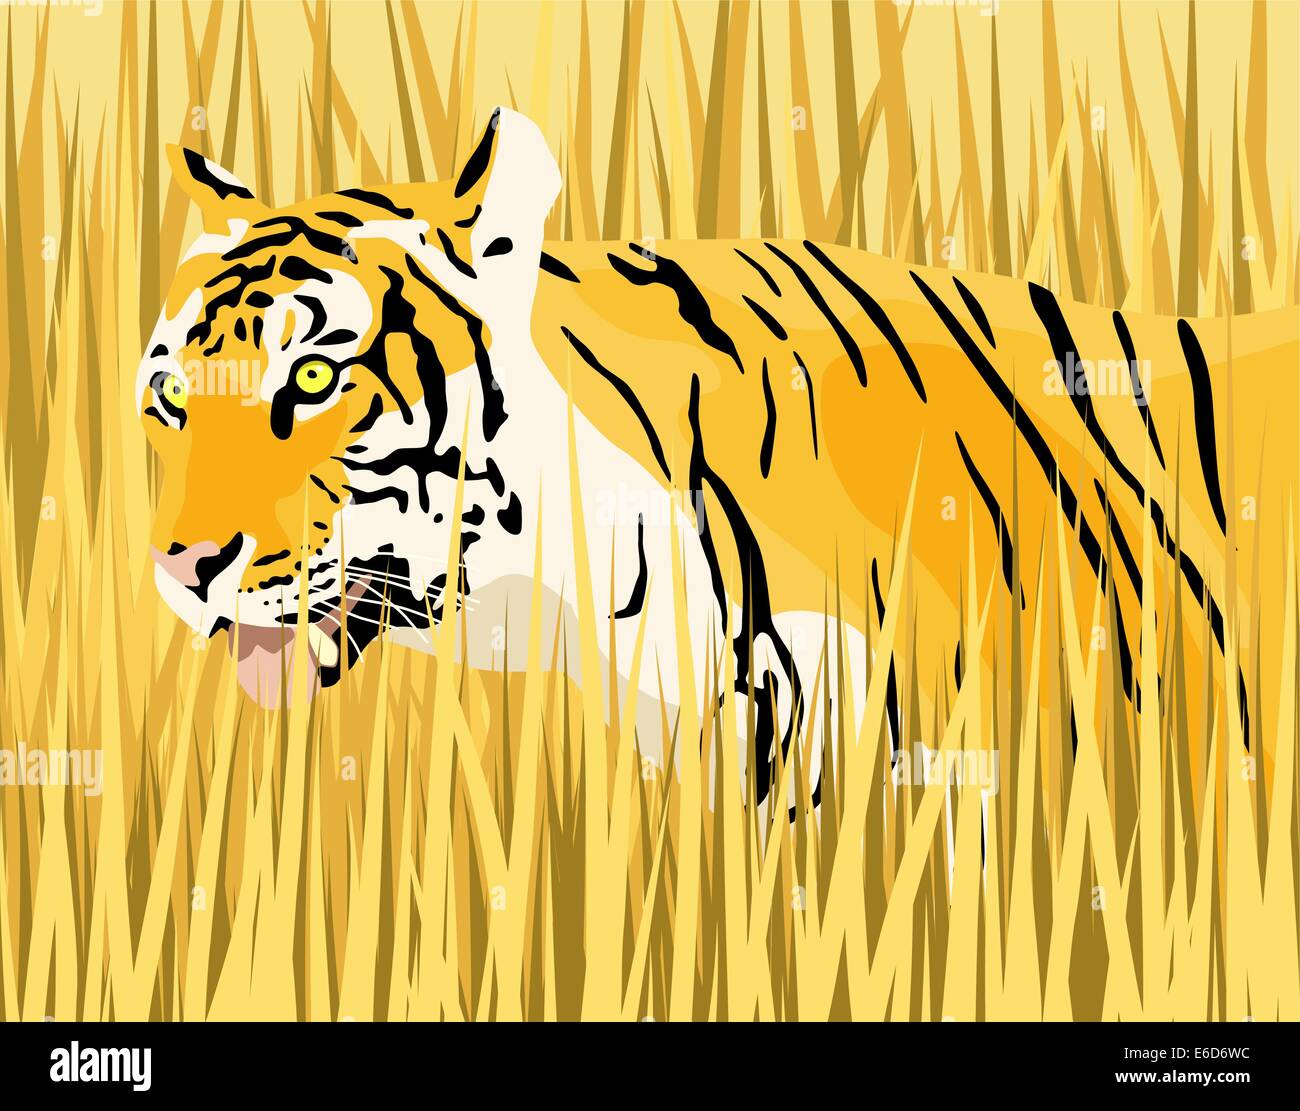 Vektor-Illustration eines Tigers in Trockenrasen mit Tiger und Grass als separate Elemente Stock Vektor